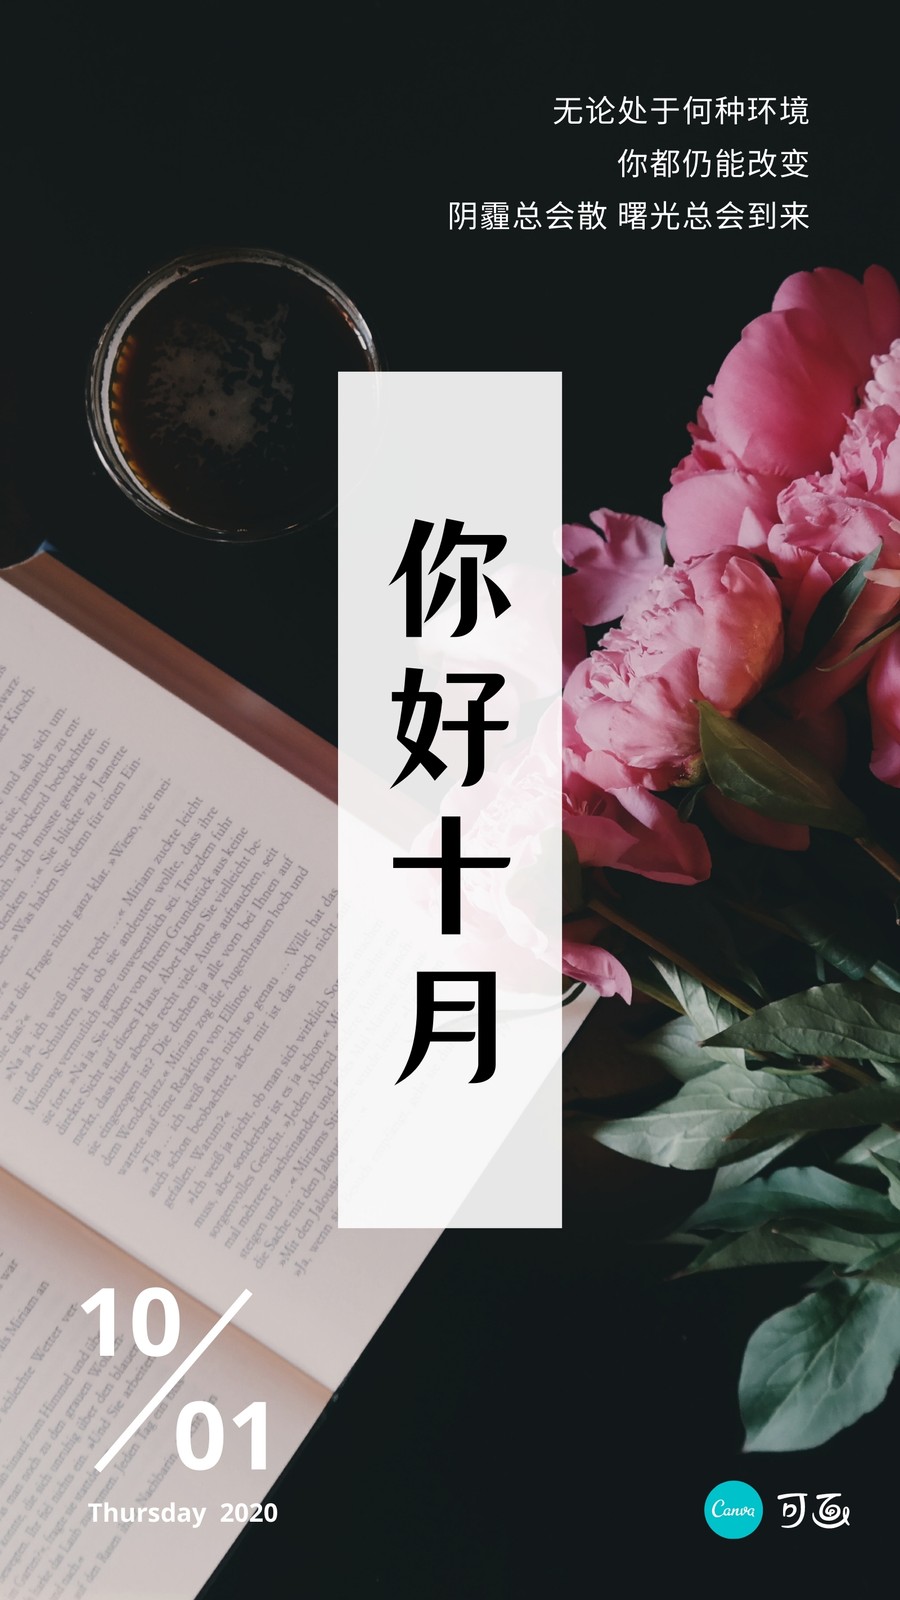 黑粉色十月花束书桌照片分享中文日签